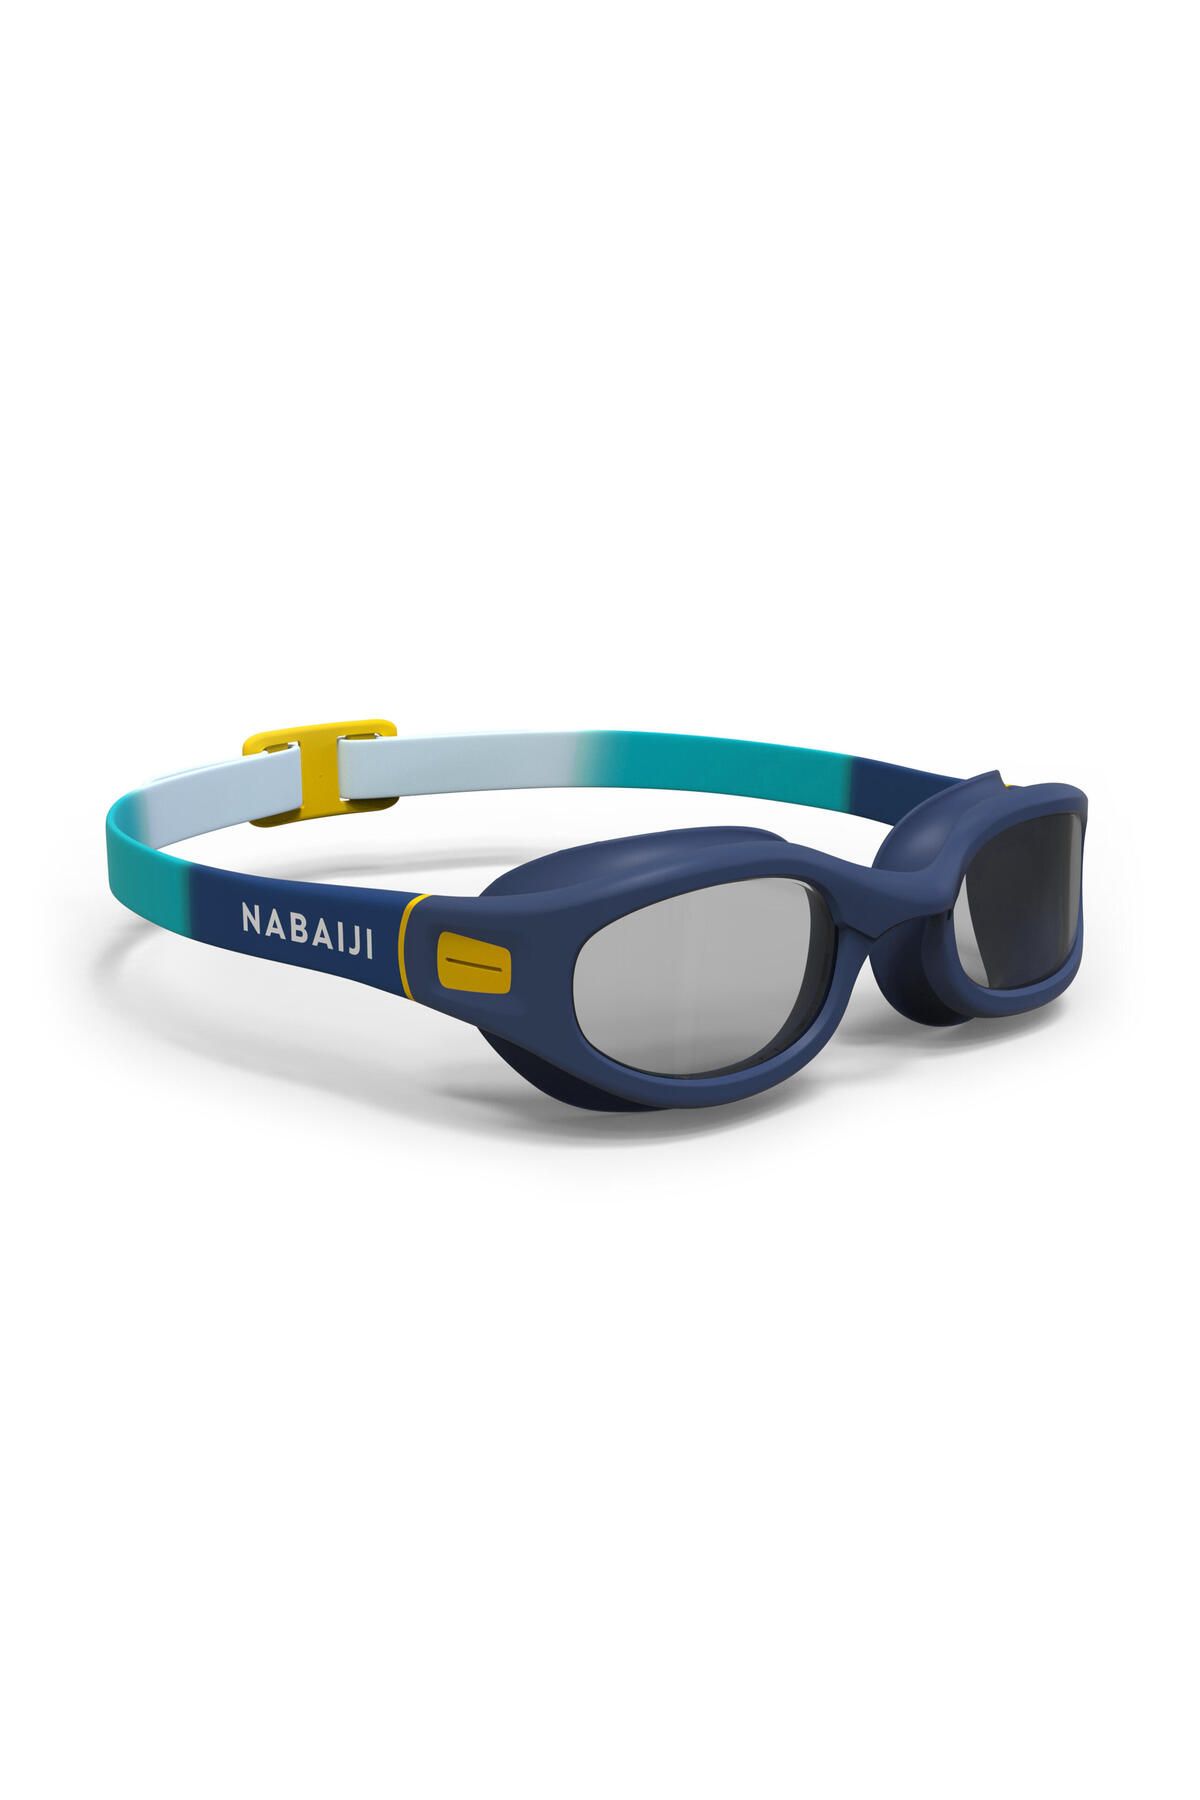 Decathlon Yüzücü Gözlüğü - S Boy - Mavi / Gri / Sarı - 100 Soft